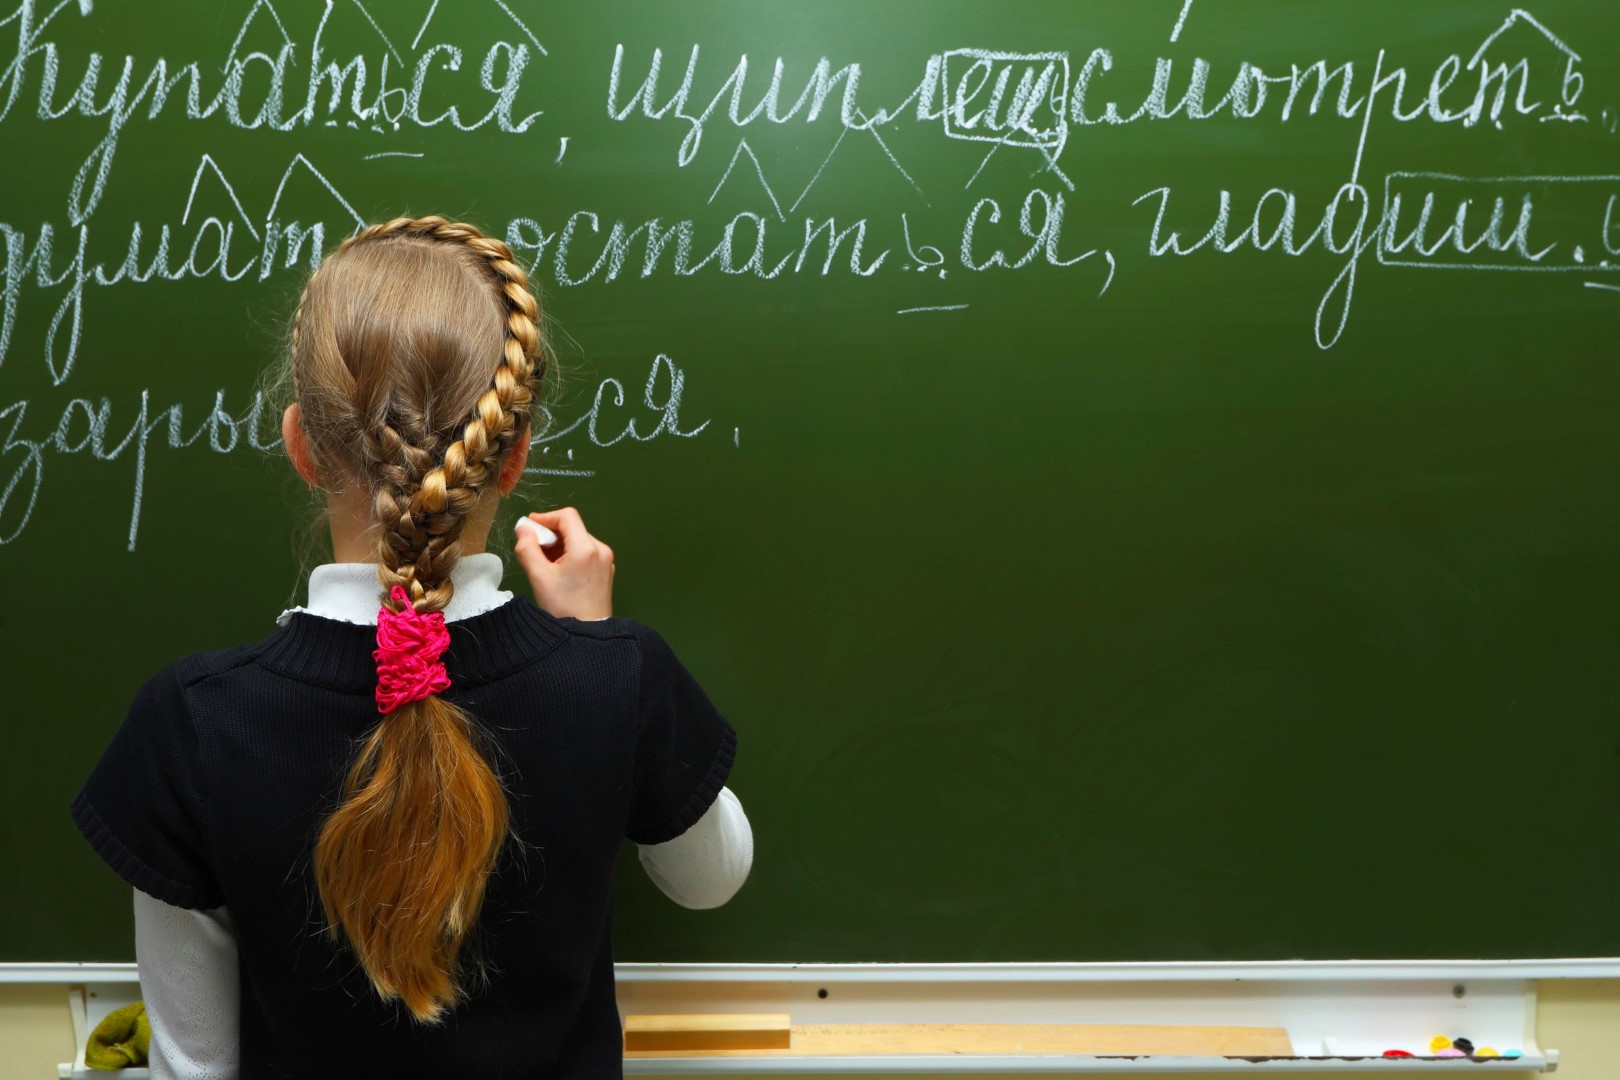 Kaimynams latviams nusprendus nuo 2026-ųjų atsisakyti mokyklose rusų kaip antrosios užsienio kalbos, Lietuva irgi svarsto pasekti šiuo pavyzdžiu.